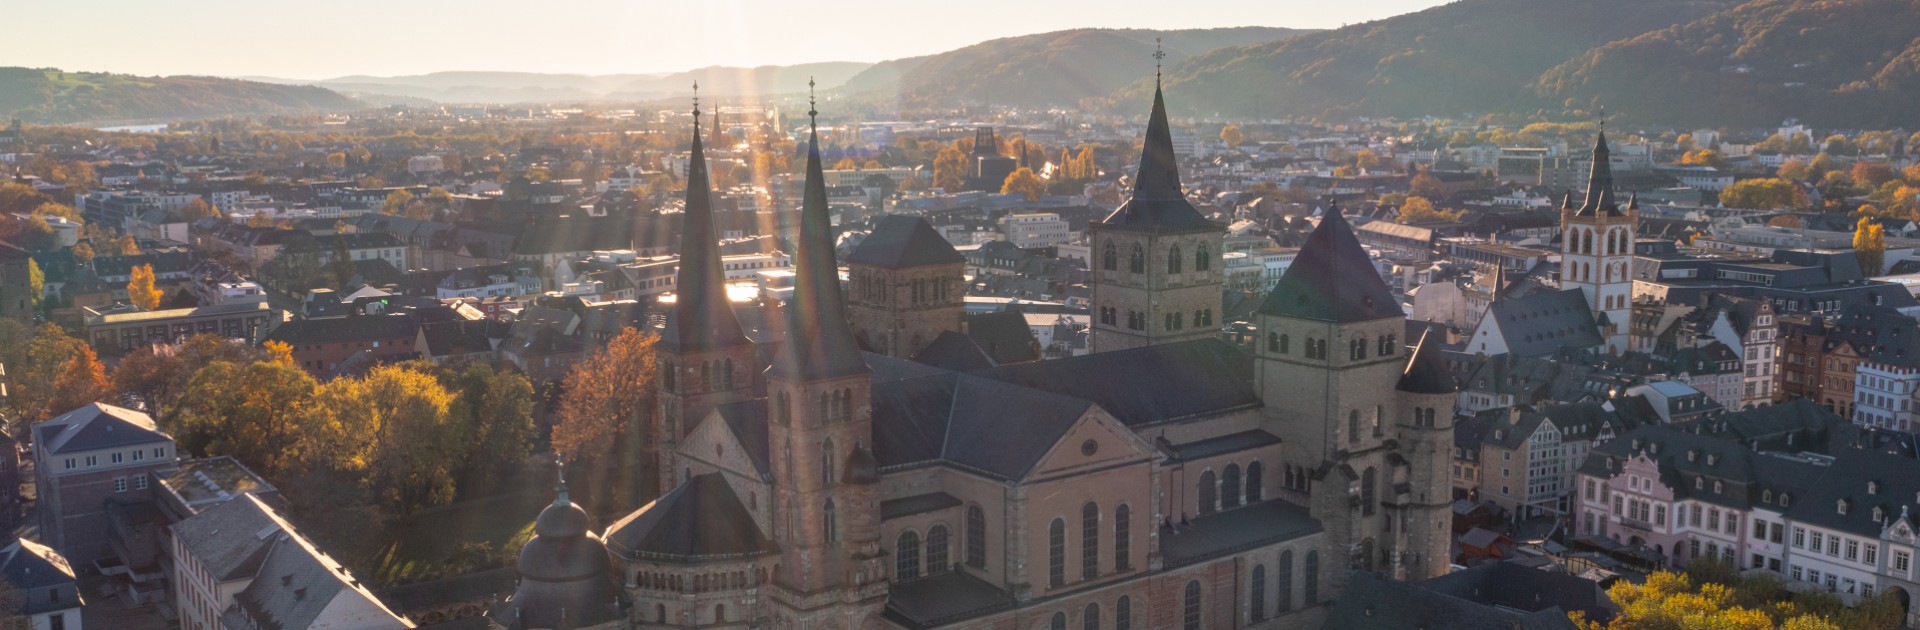 Aerial of Trier City Centre - © Victor Beusch / Trier Tourismus und Marketing GmbH